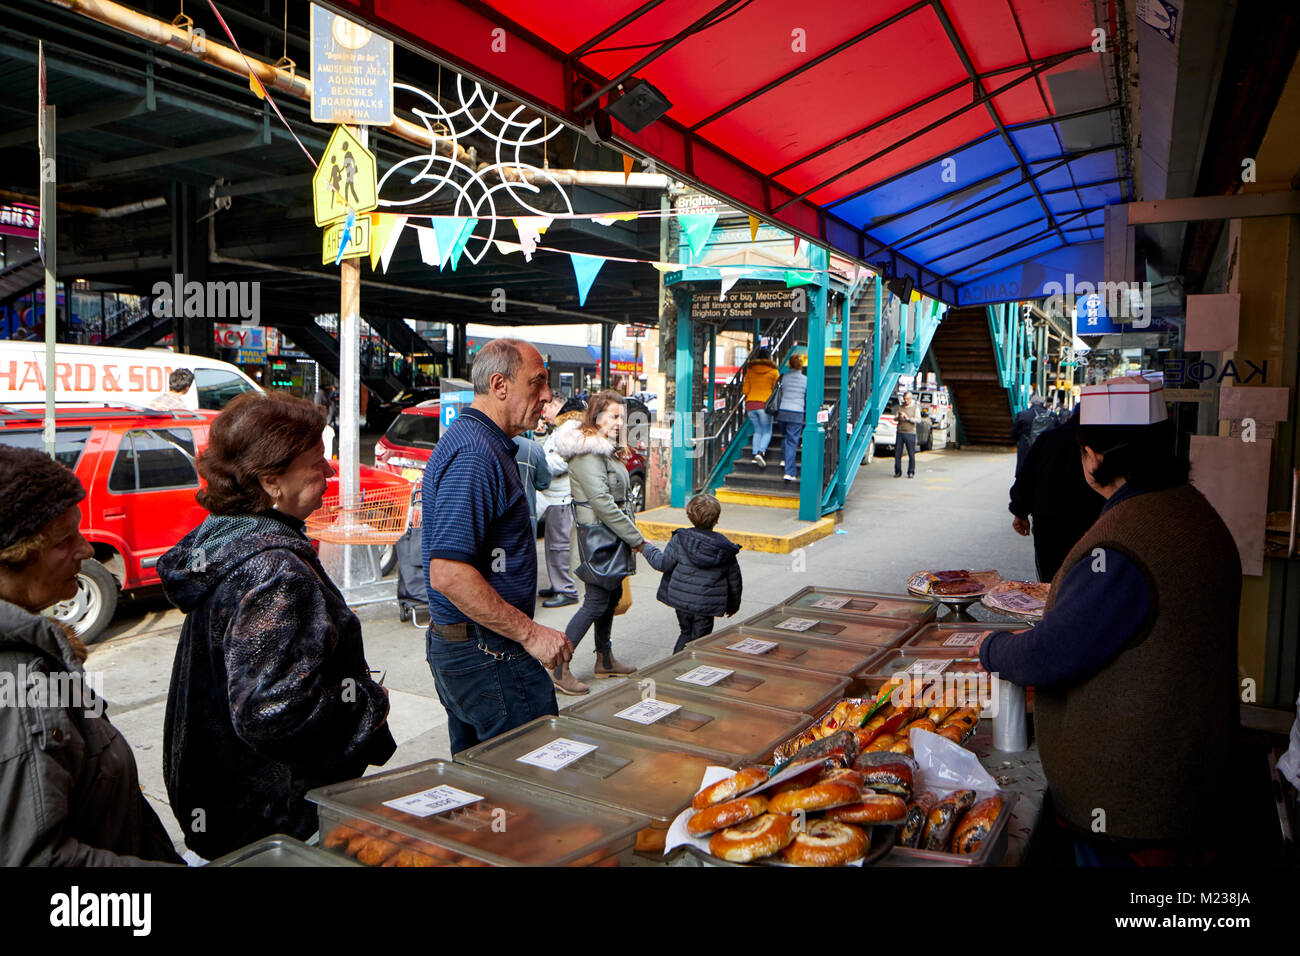 La città di New York Coney Island, la spiaggia di Brighton Avenue nel quartiere Russo, mercato gli operatori in strada la vendita di prodotti da forno Foto Stock